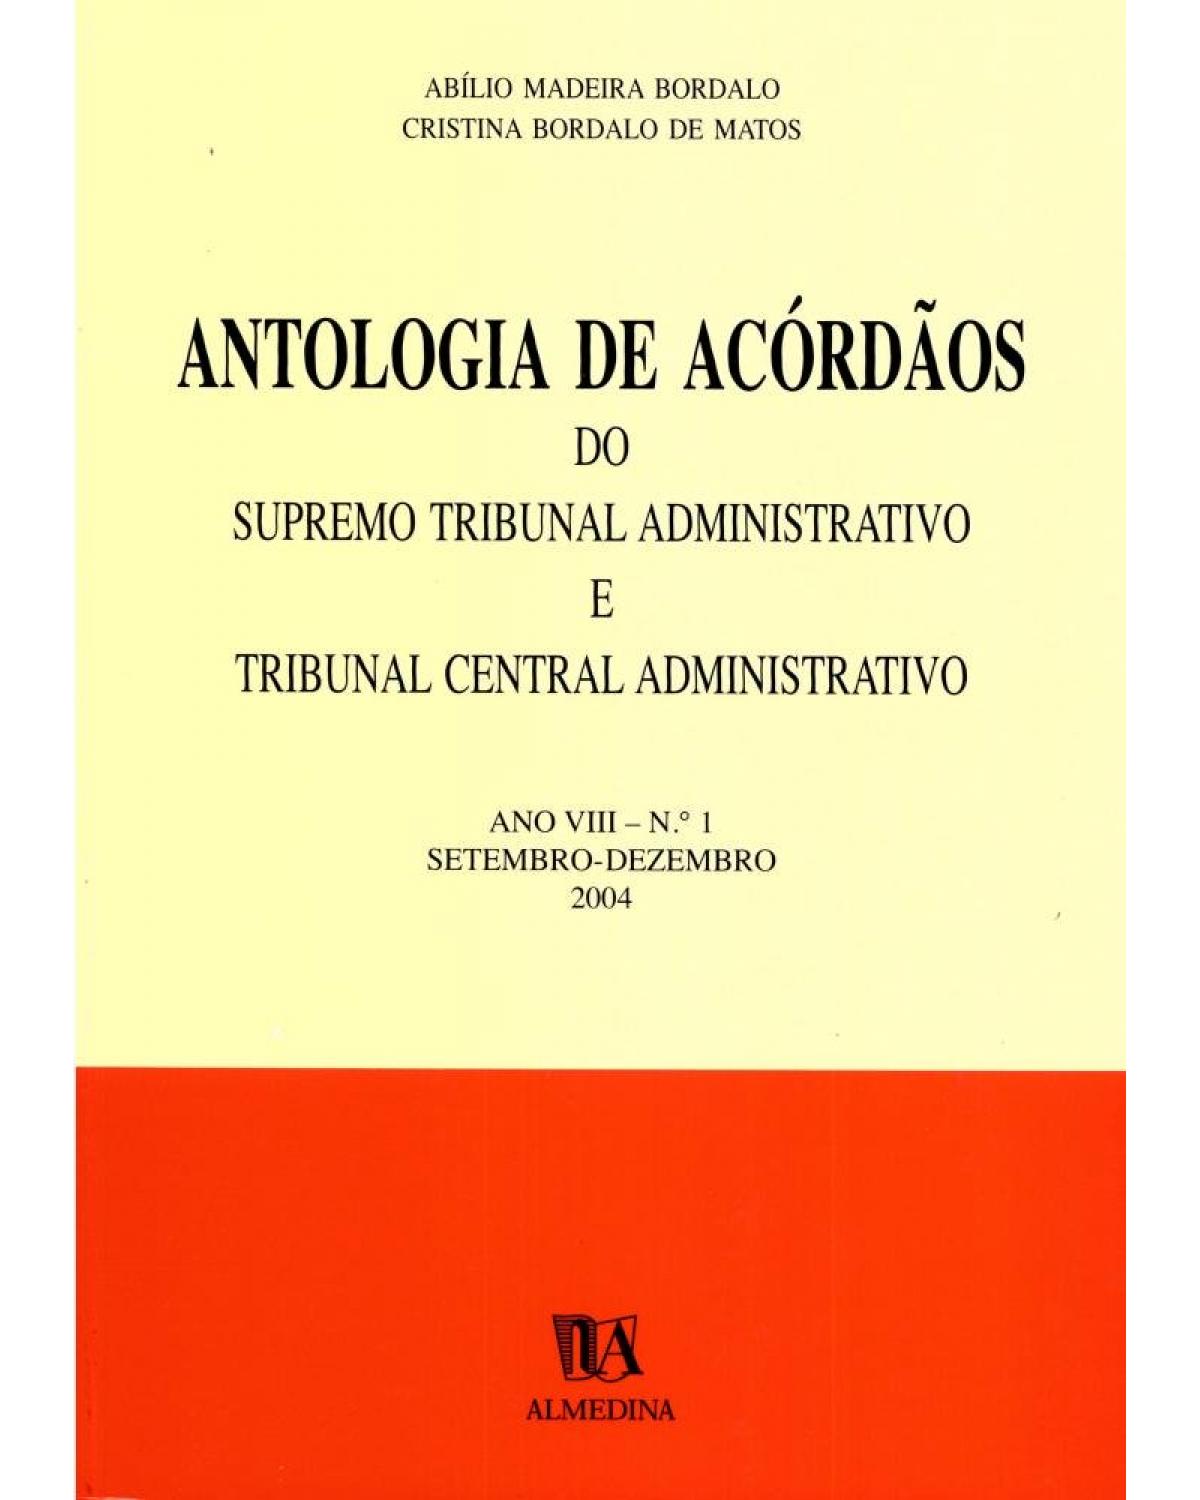 Antologia de acórdãos do supremo tribunal administrativo e tribunal central administrativo - ano VIII: Setembro-dezembro 2004 - 1ª Edição | 2005